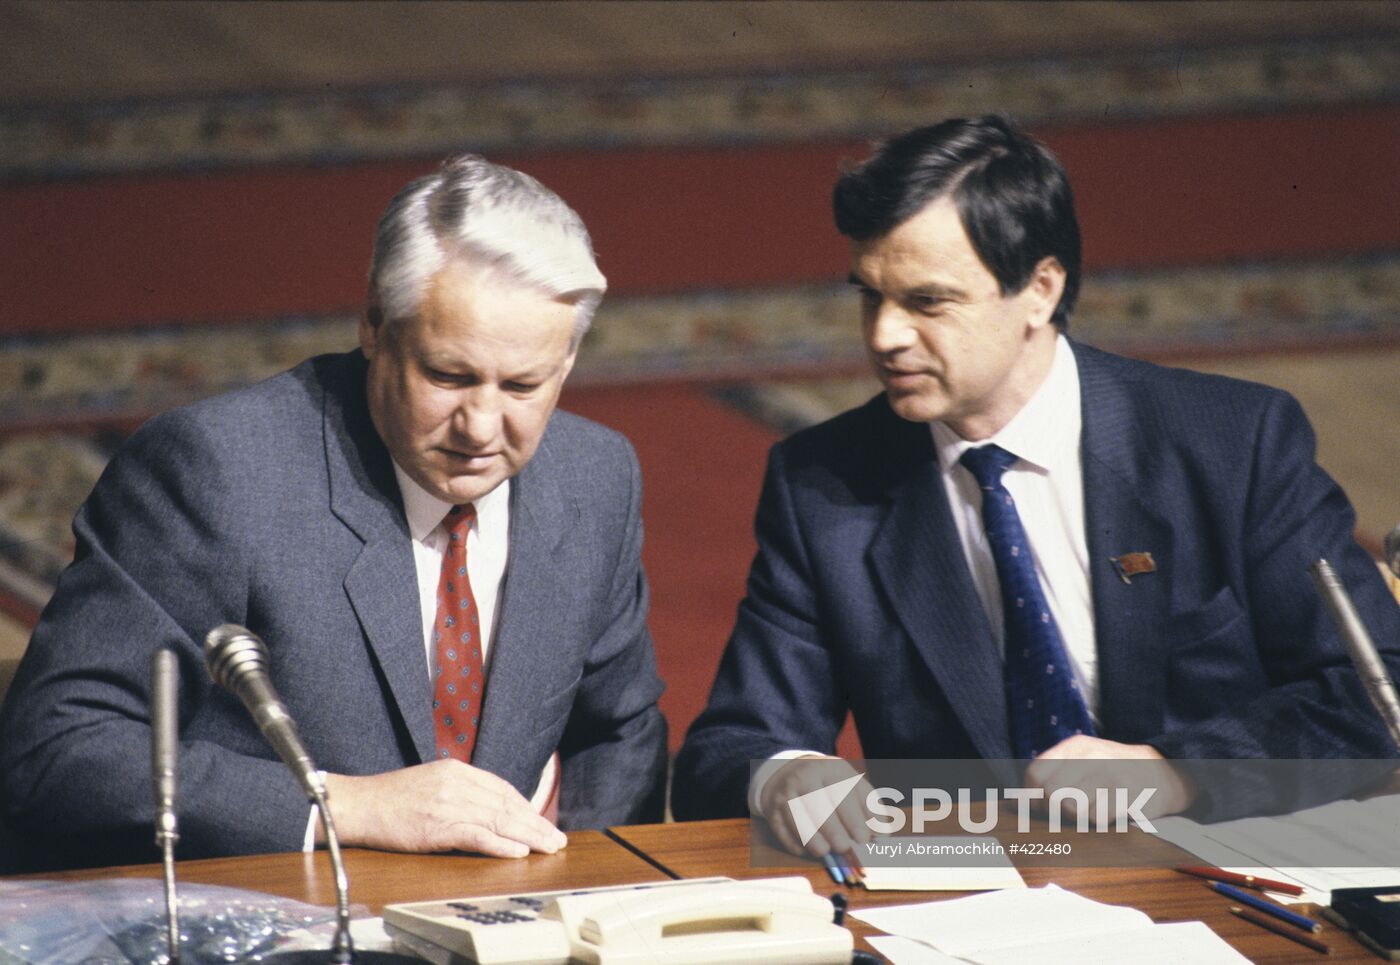 Boris Yeltsin and Ruslan Khasbulatov